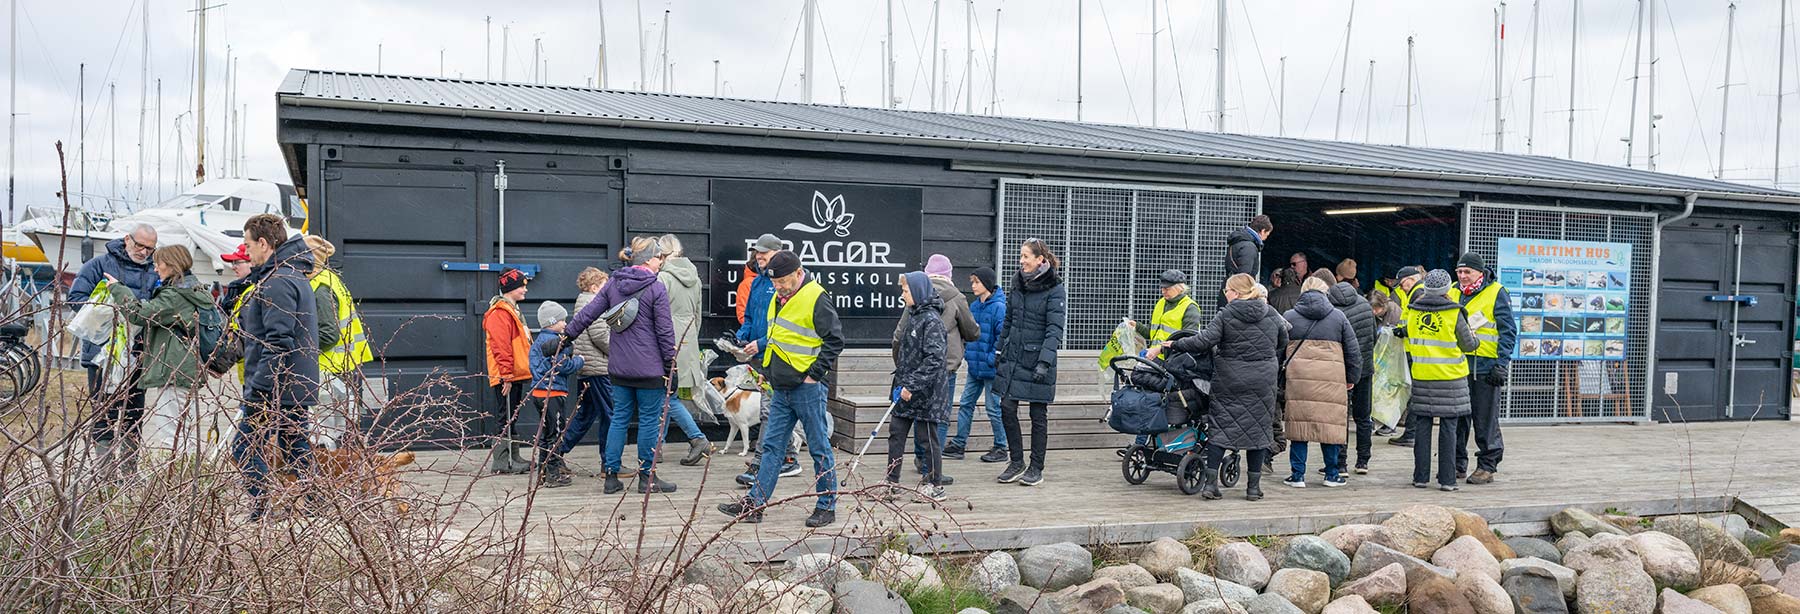 Mange deltager søndag i Naturvogterne Dragørs affaldsindsamling. Foto: TorbenStender.